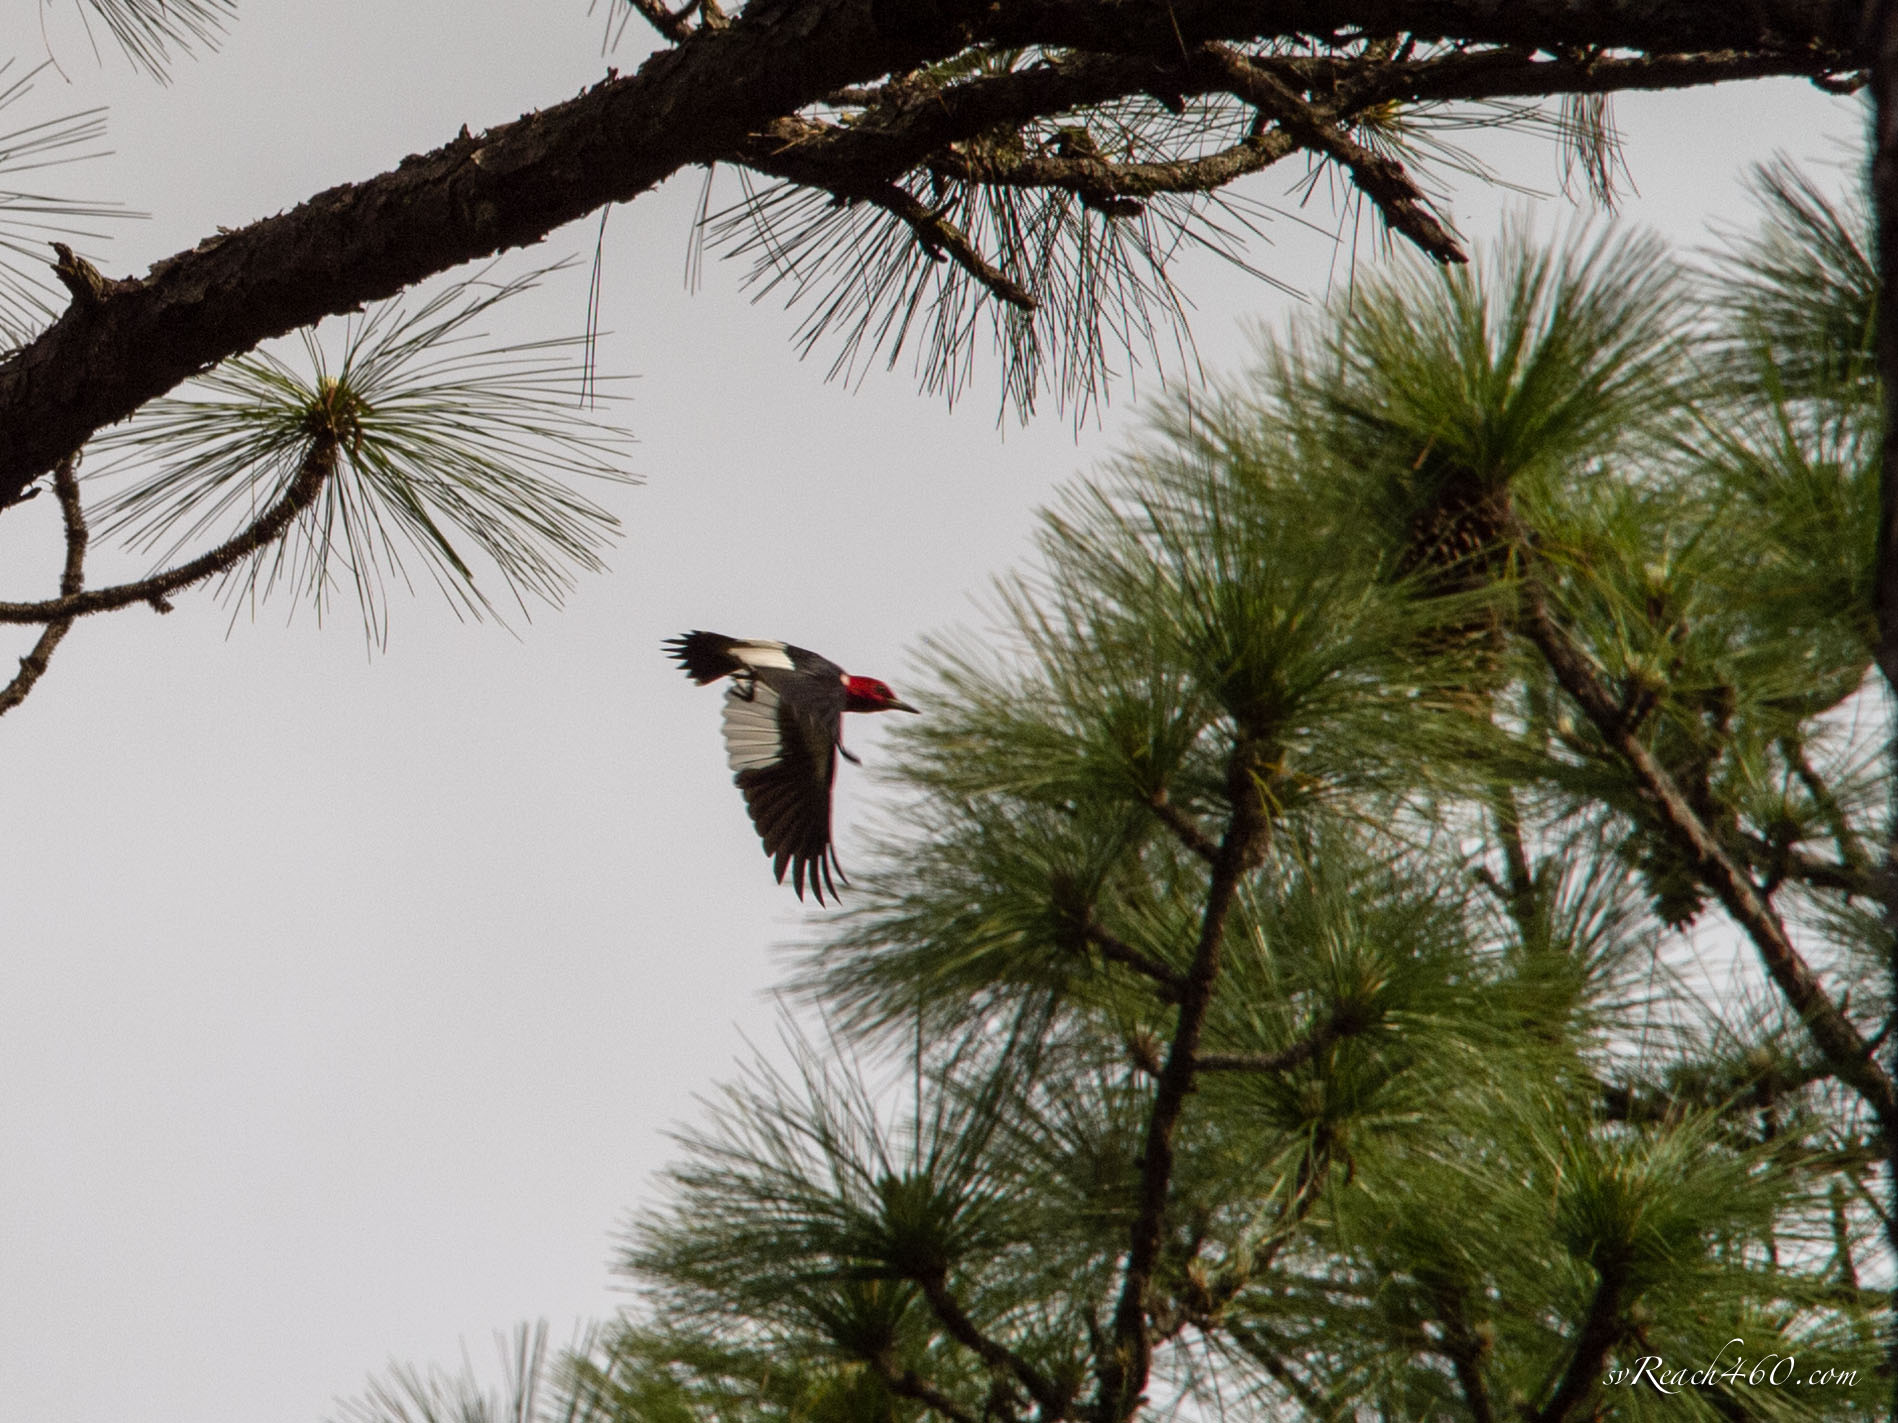 Red-headed woodpecker in flight